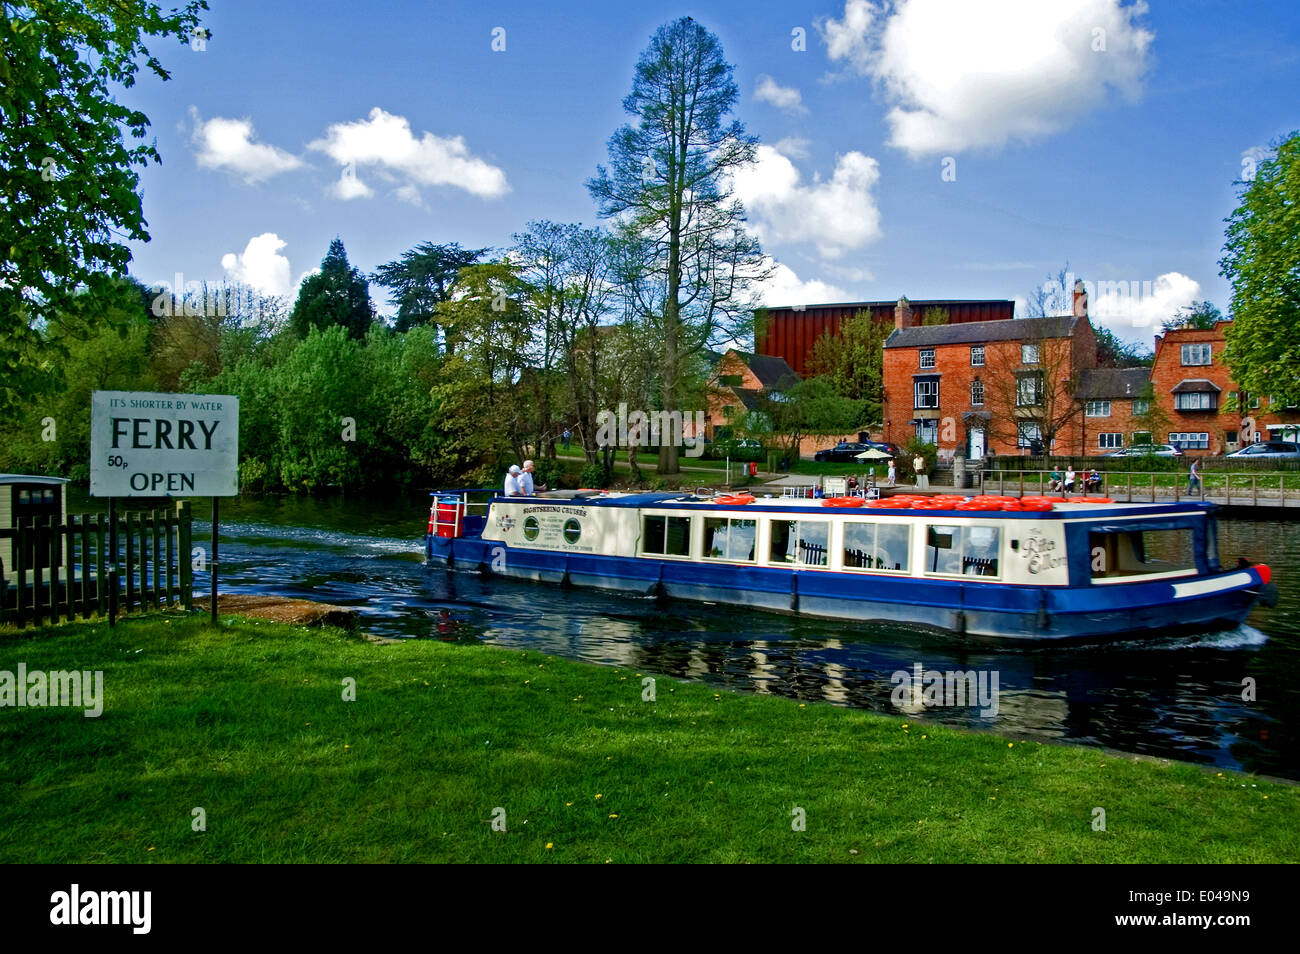 Voyage de plaisir voile sur la rivière Avon à Stratford upon Avon, en passant par le site de la chaîne traversée en ferry. Banque D'Images